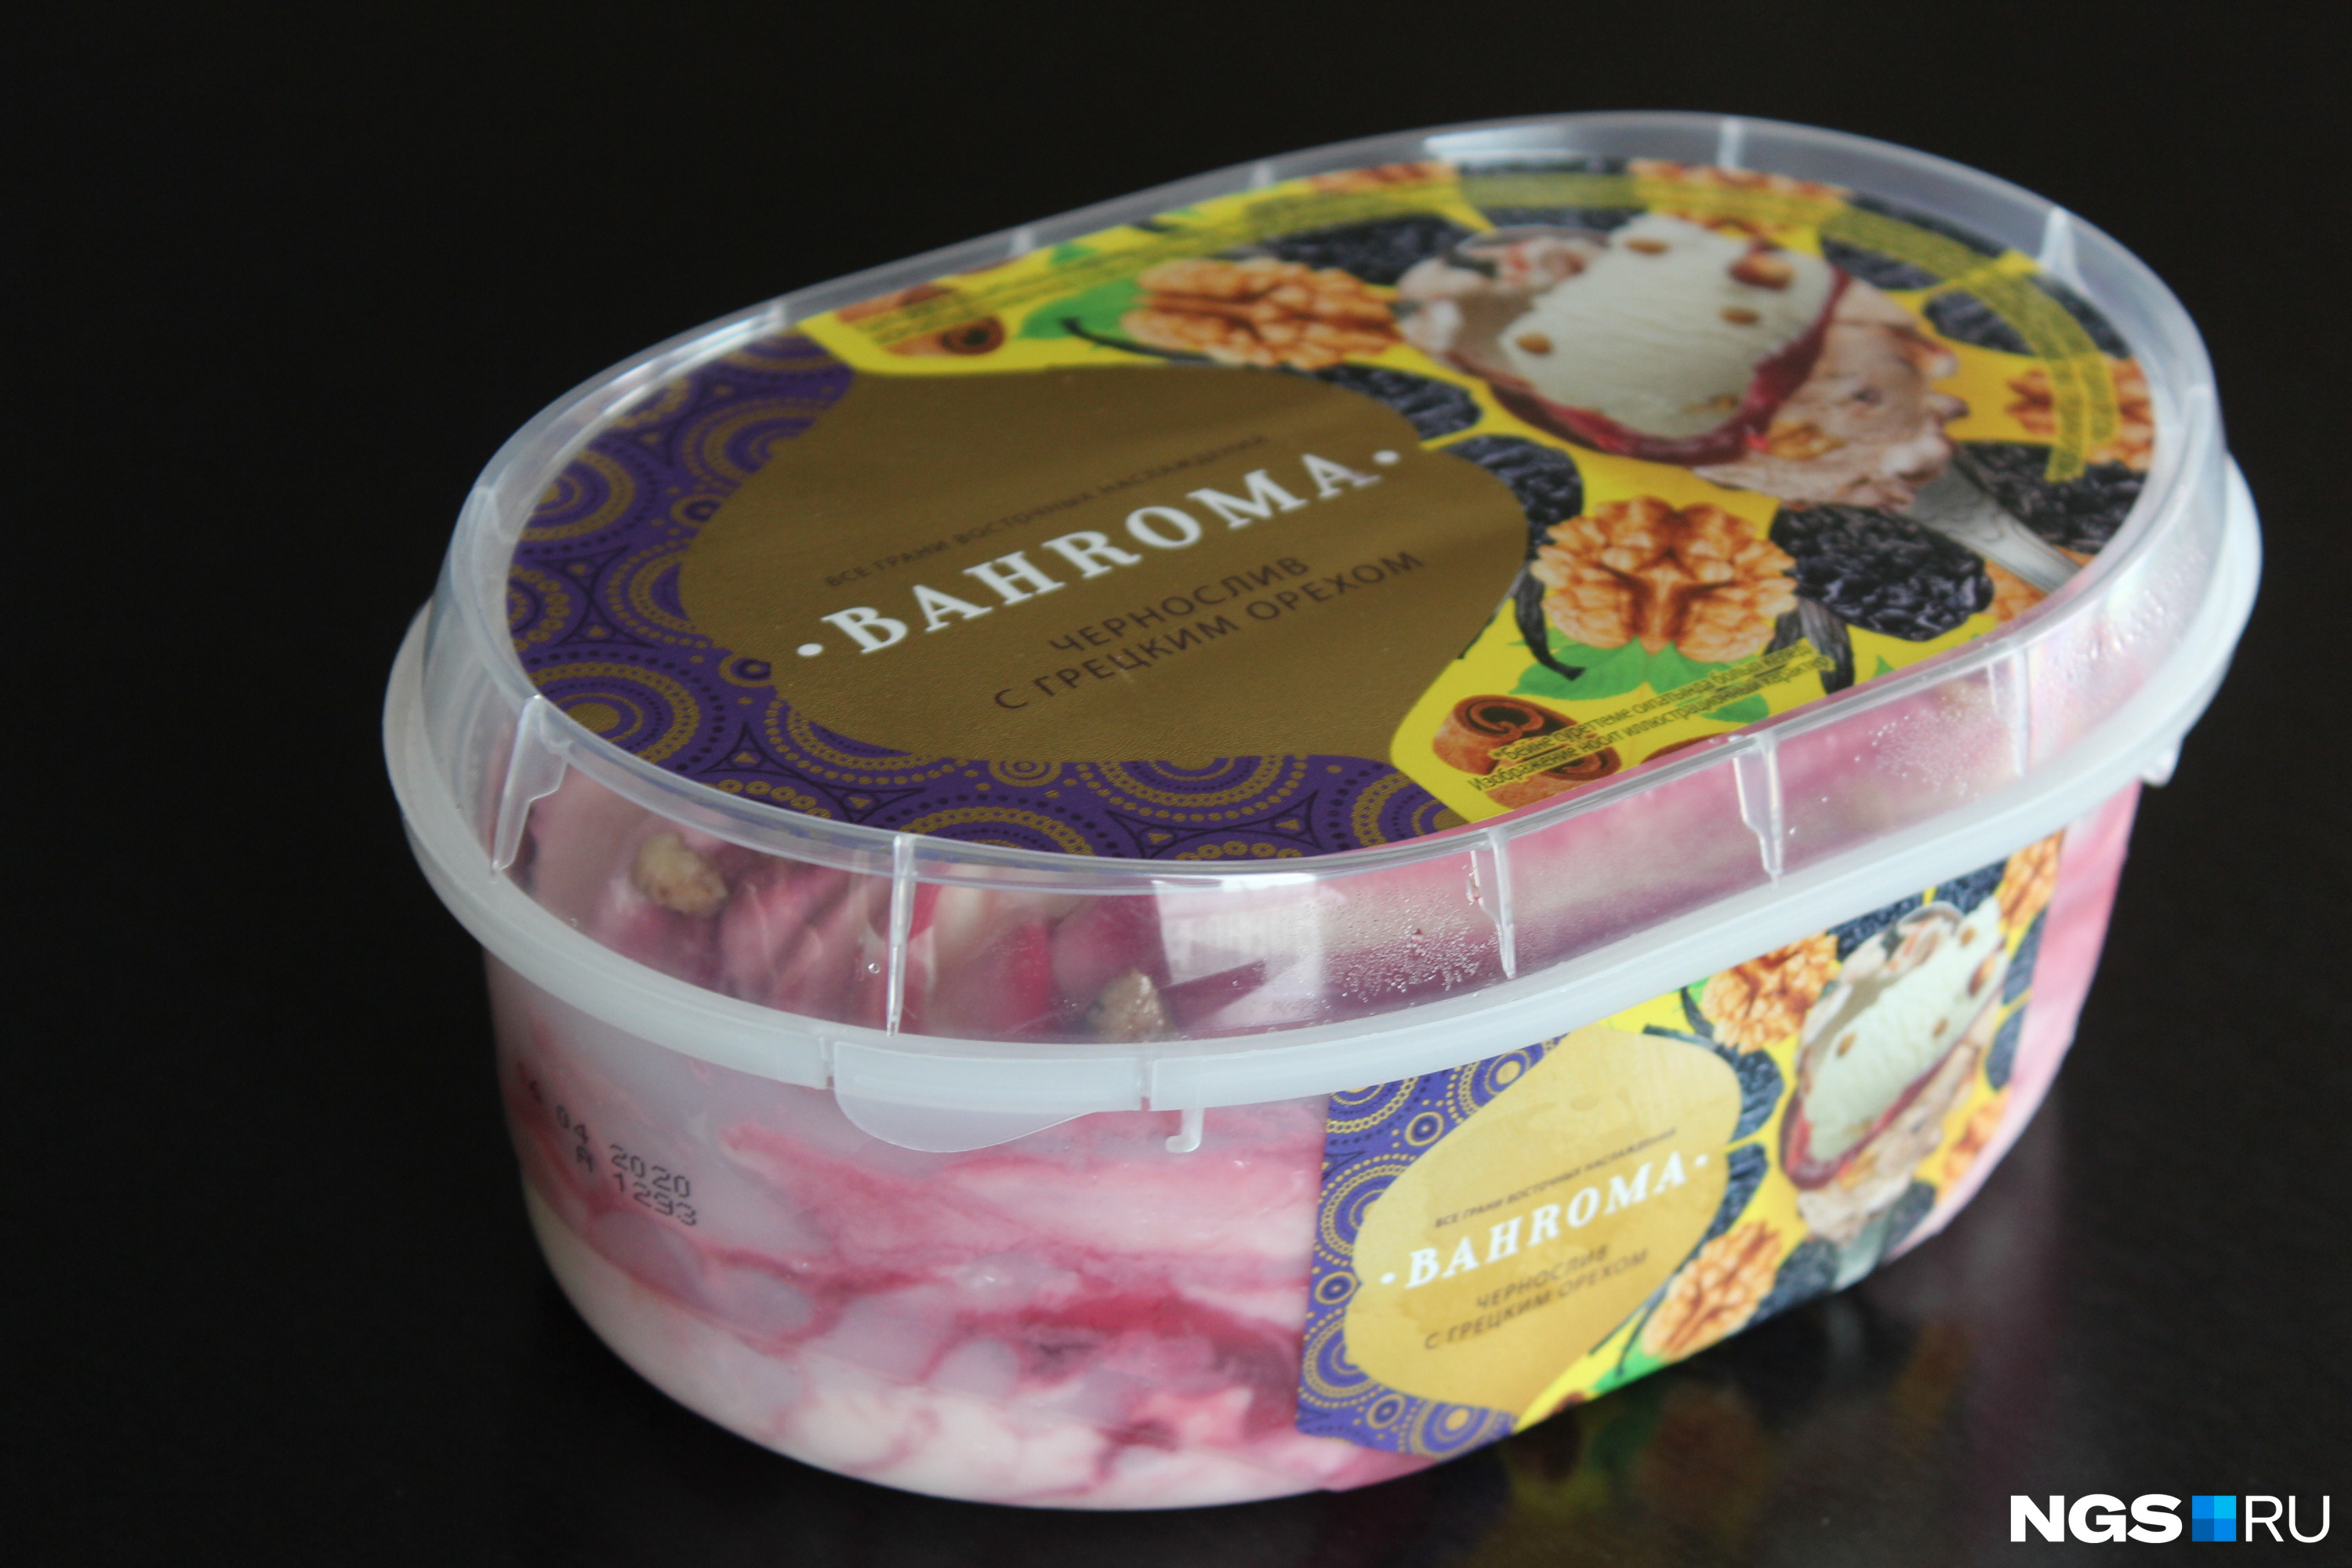 Казахское мороженое «Бахрома» можно купить и в Новосибирске